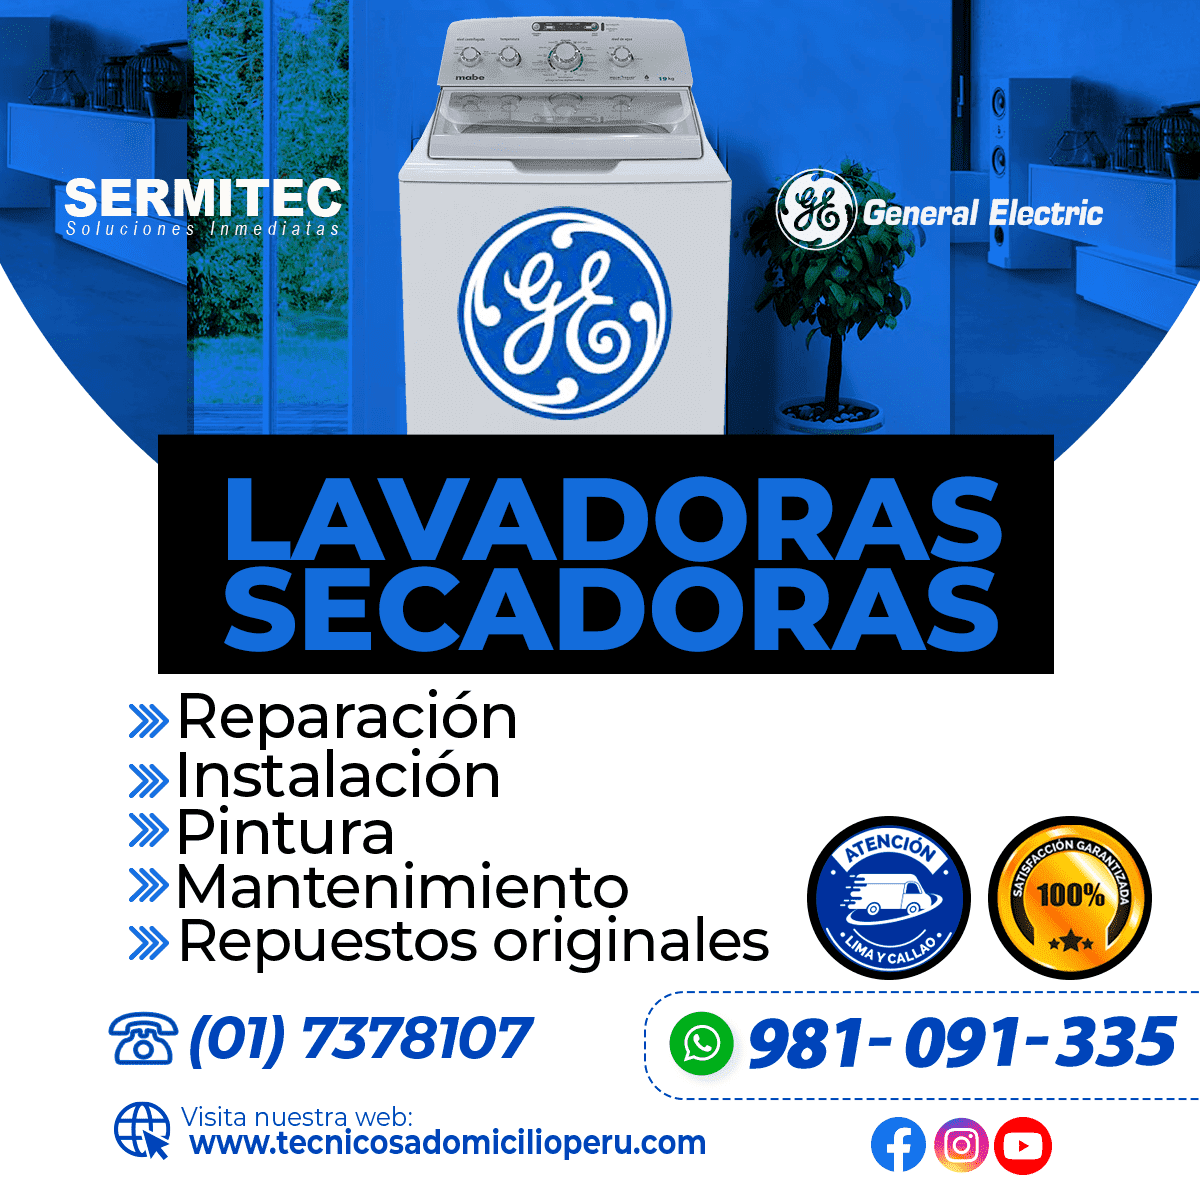 GENERAL ELECTRIC Reparación de Lavadoras 981091335 BELLAVISTA